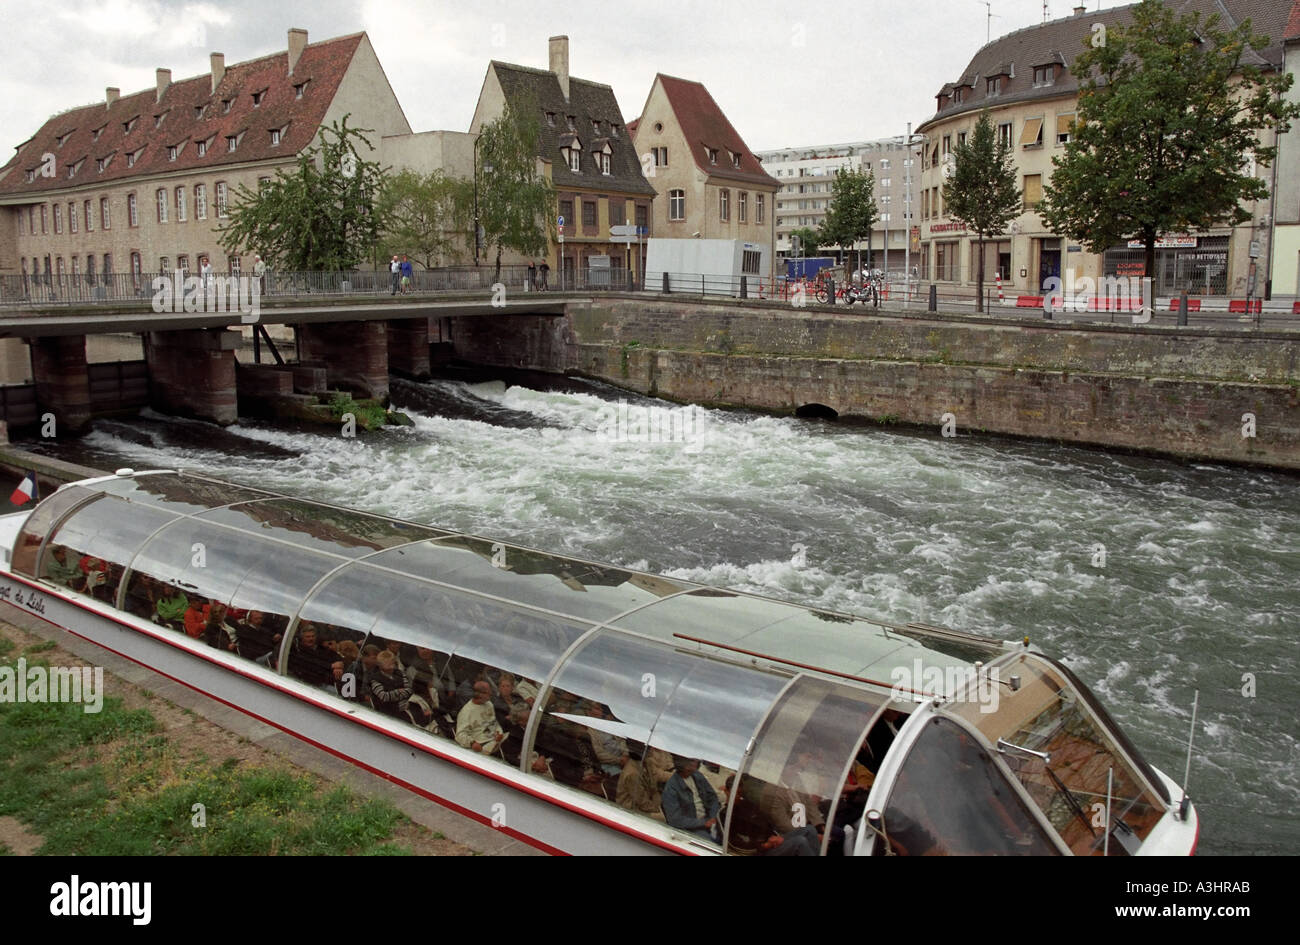 Bateau de tourisme passe par écluse de navigation dans le quartier de la Petite France de Strasbourg. Alsace, France. Banque D'Images